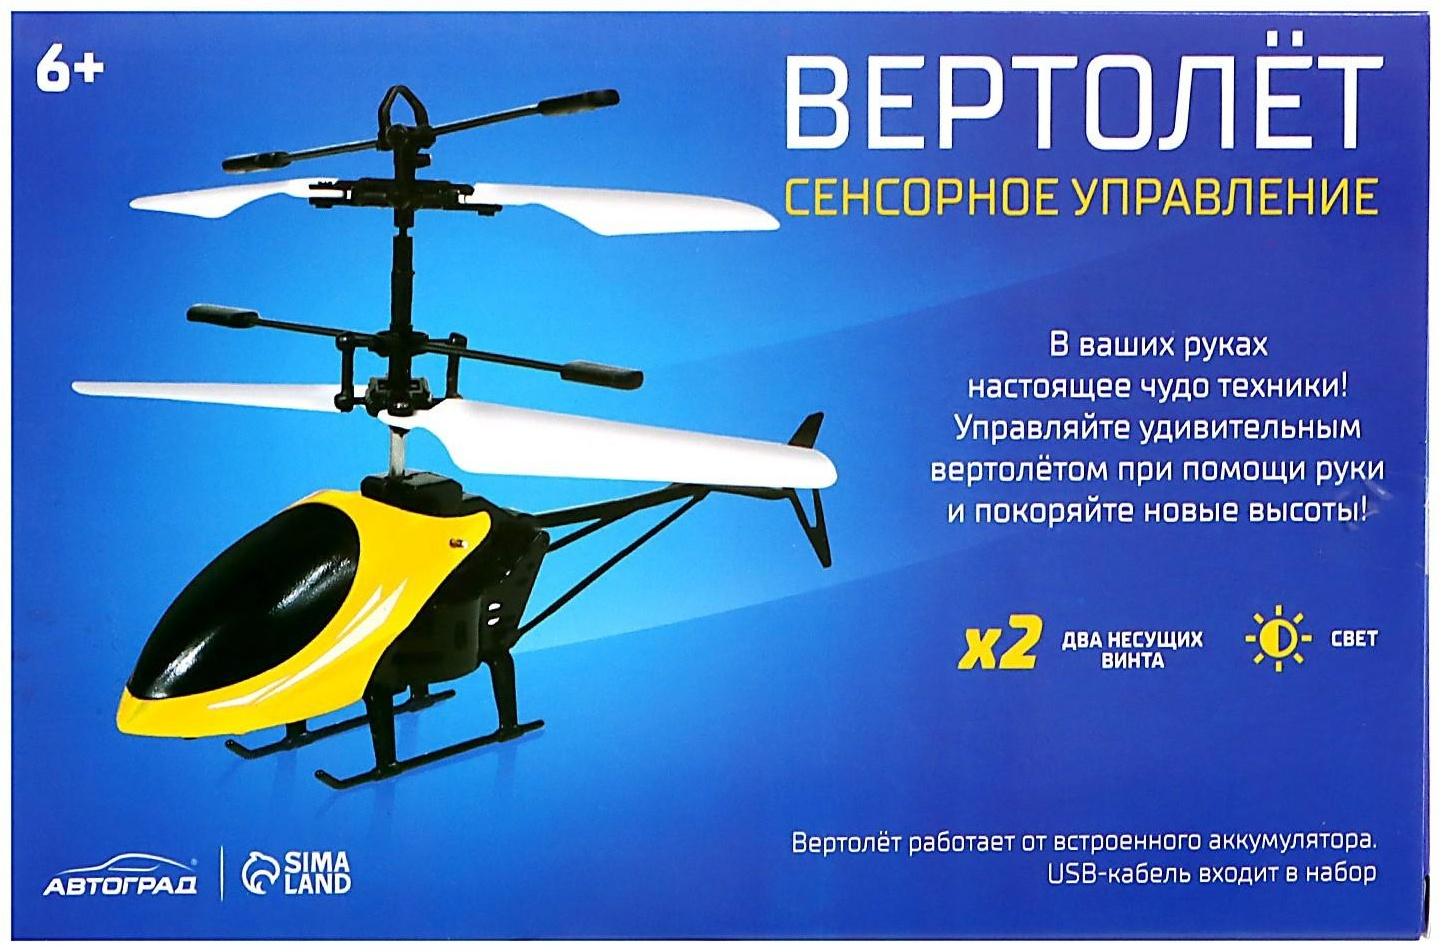 Вертолет «Прогулочный», свет, USB, цвет жёлтый